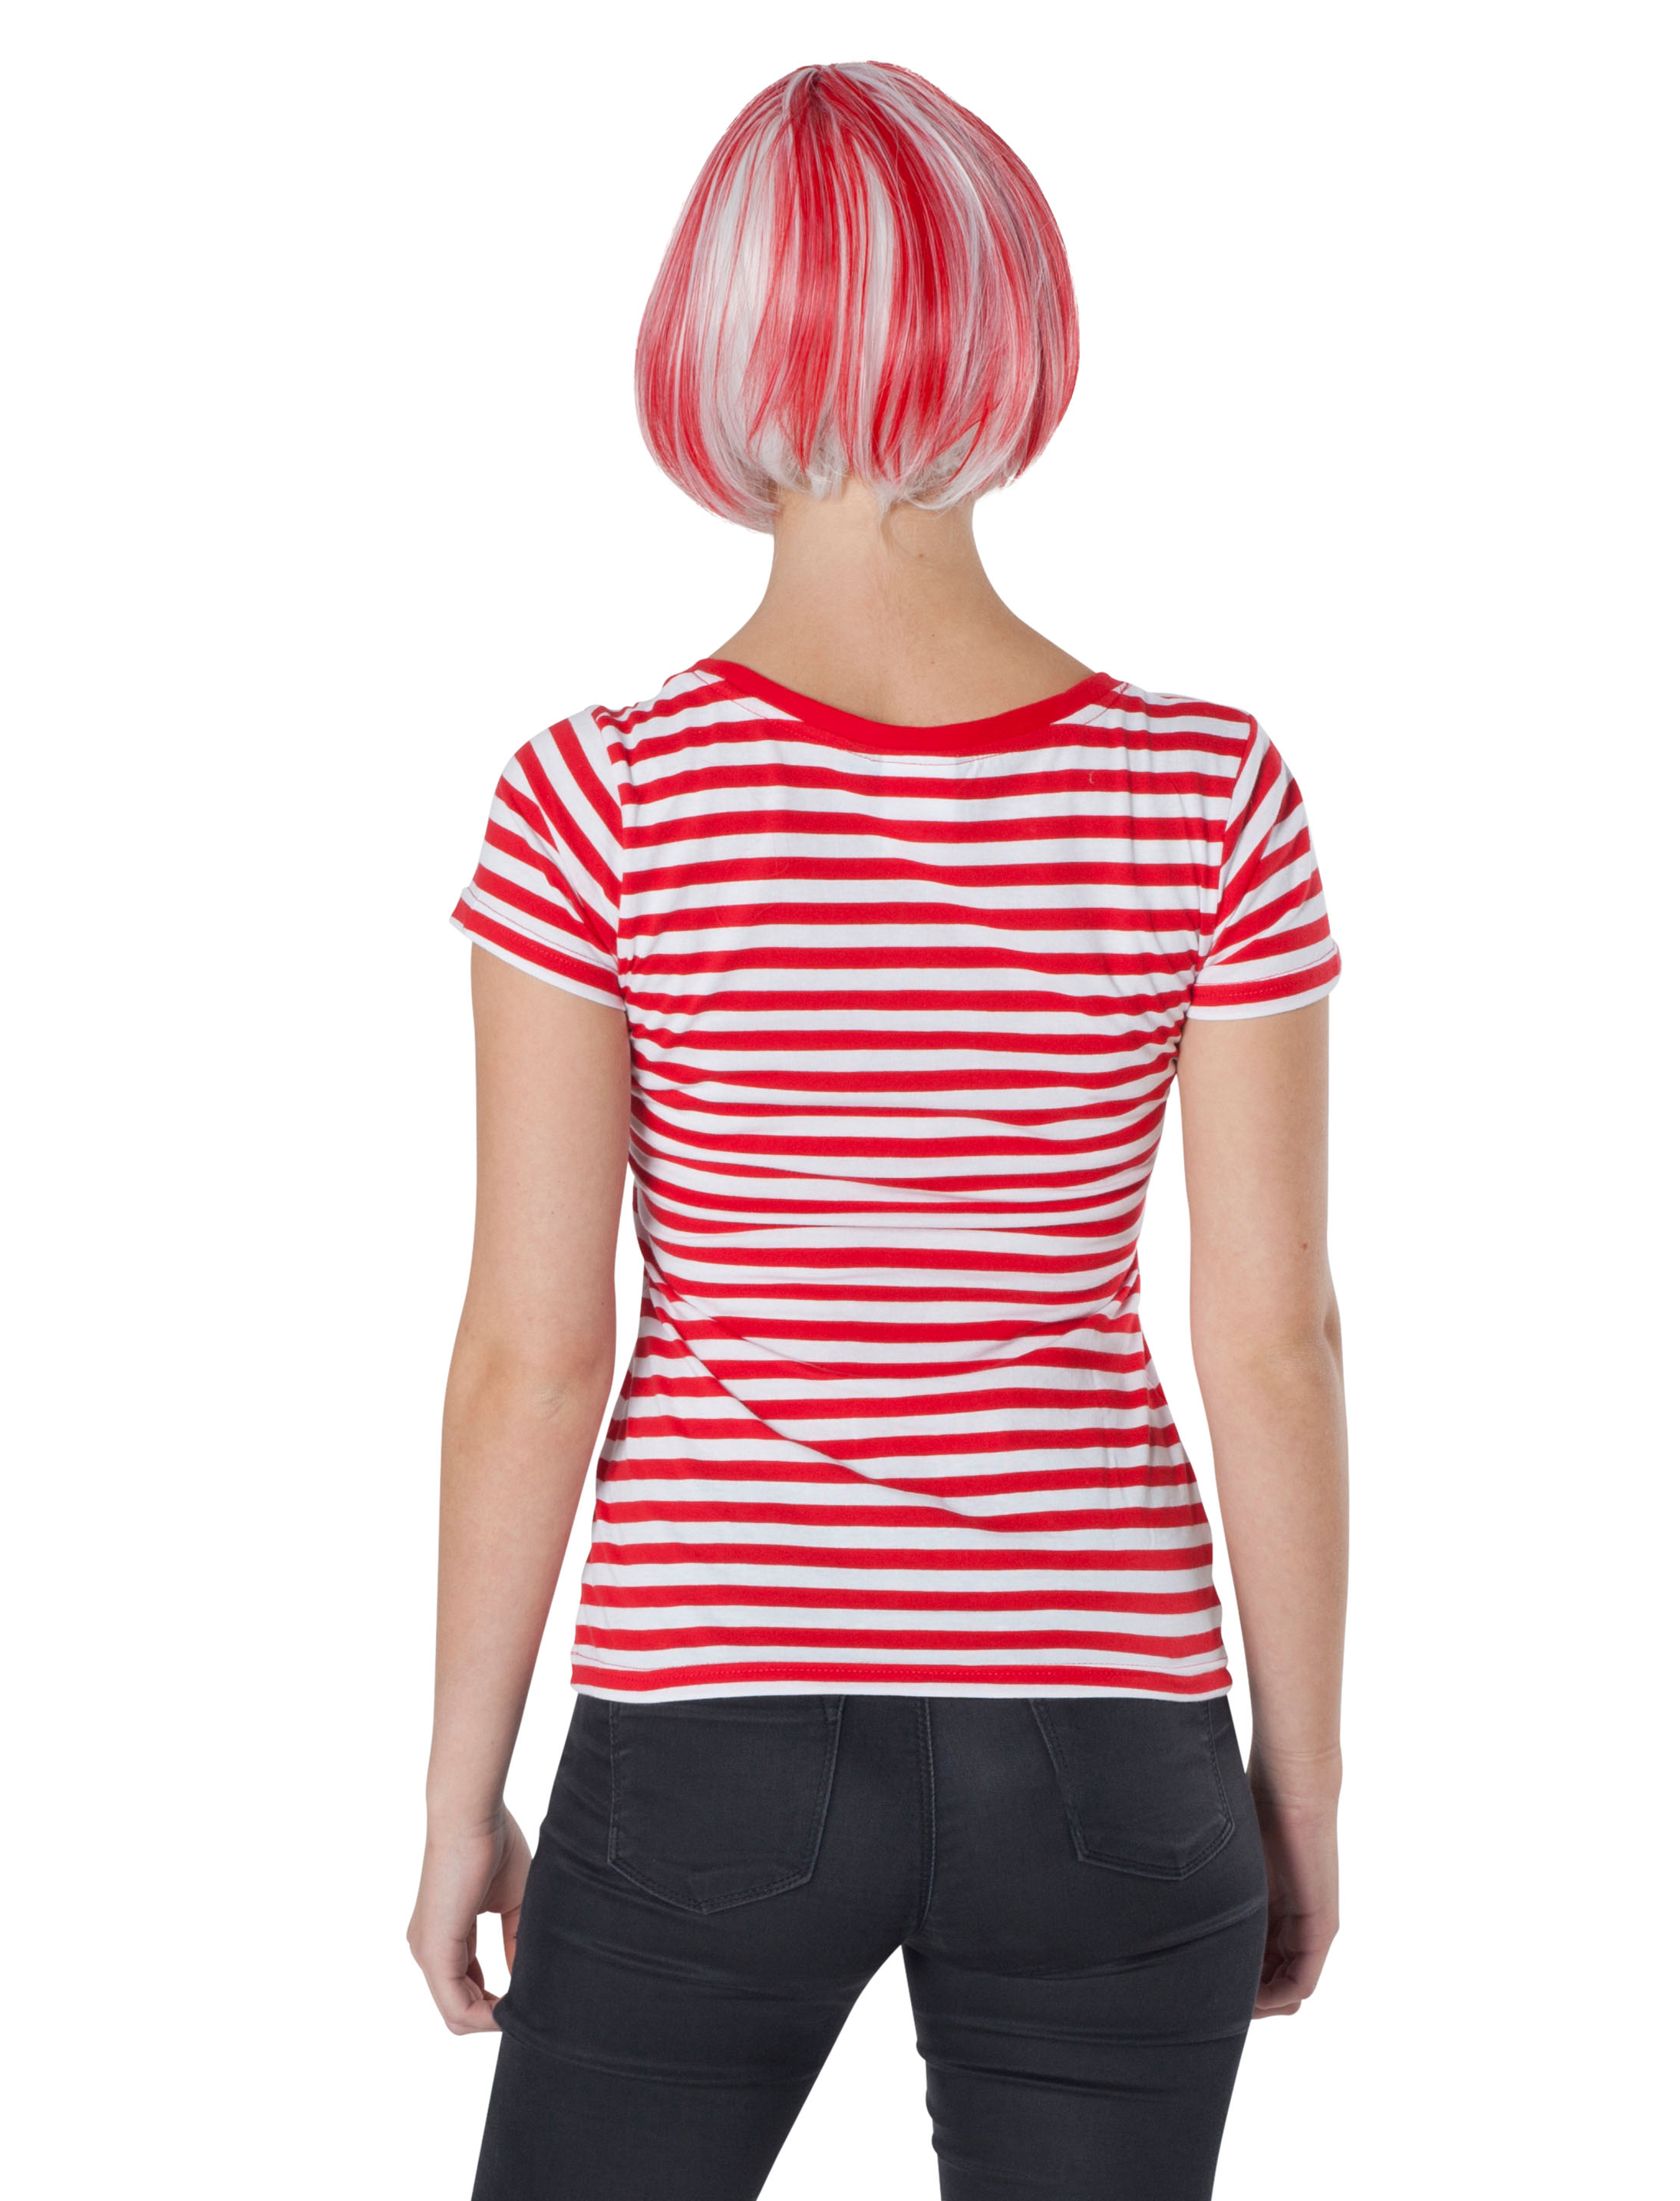 Damen Ringelshirt (rot/weiß) für Karneval kaufen » Deiters